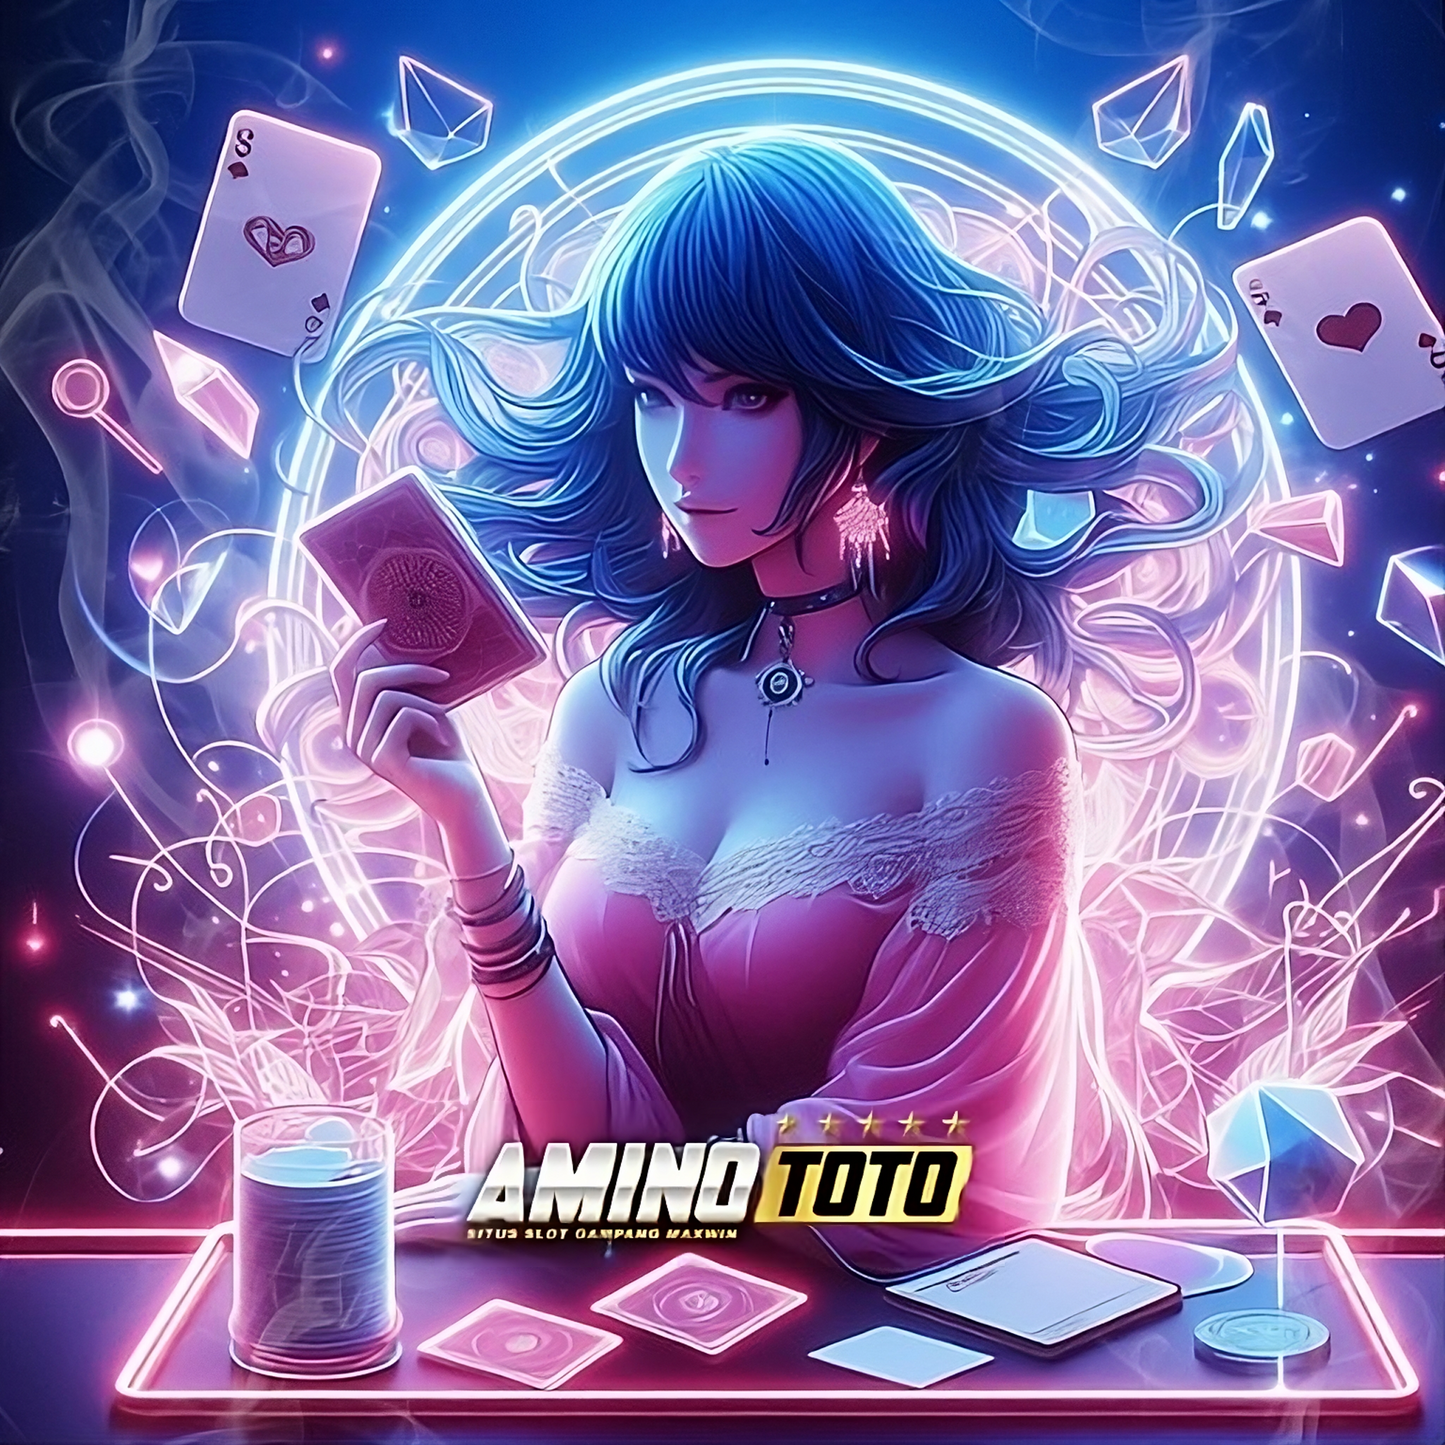 Aminototo | Toko Online yang Menyediakan Sistem Top Up Game.